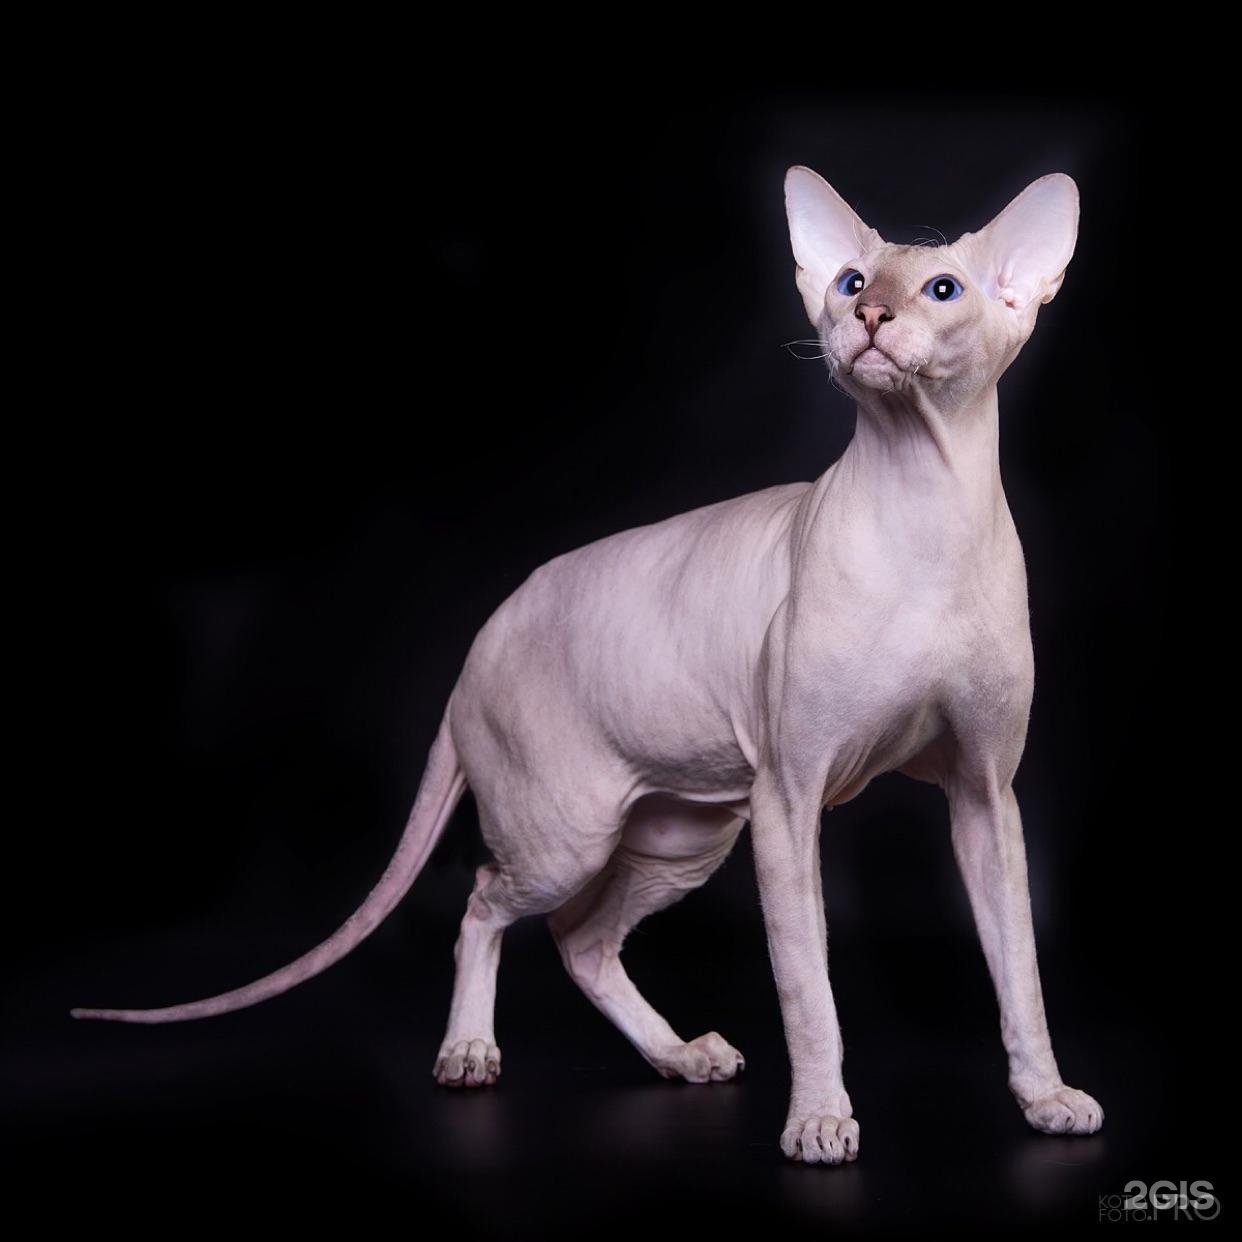 Рассмотрите фотографию кошки породы петерболд. Петерболд выставка кошек. Peterbald Cat Side. Петерболд кошка цена. Петерболд с висящими ушами купить.